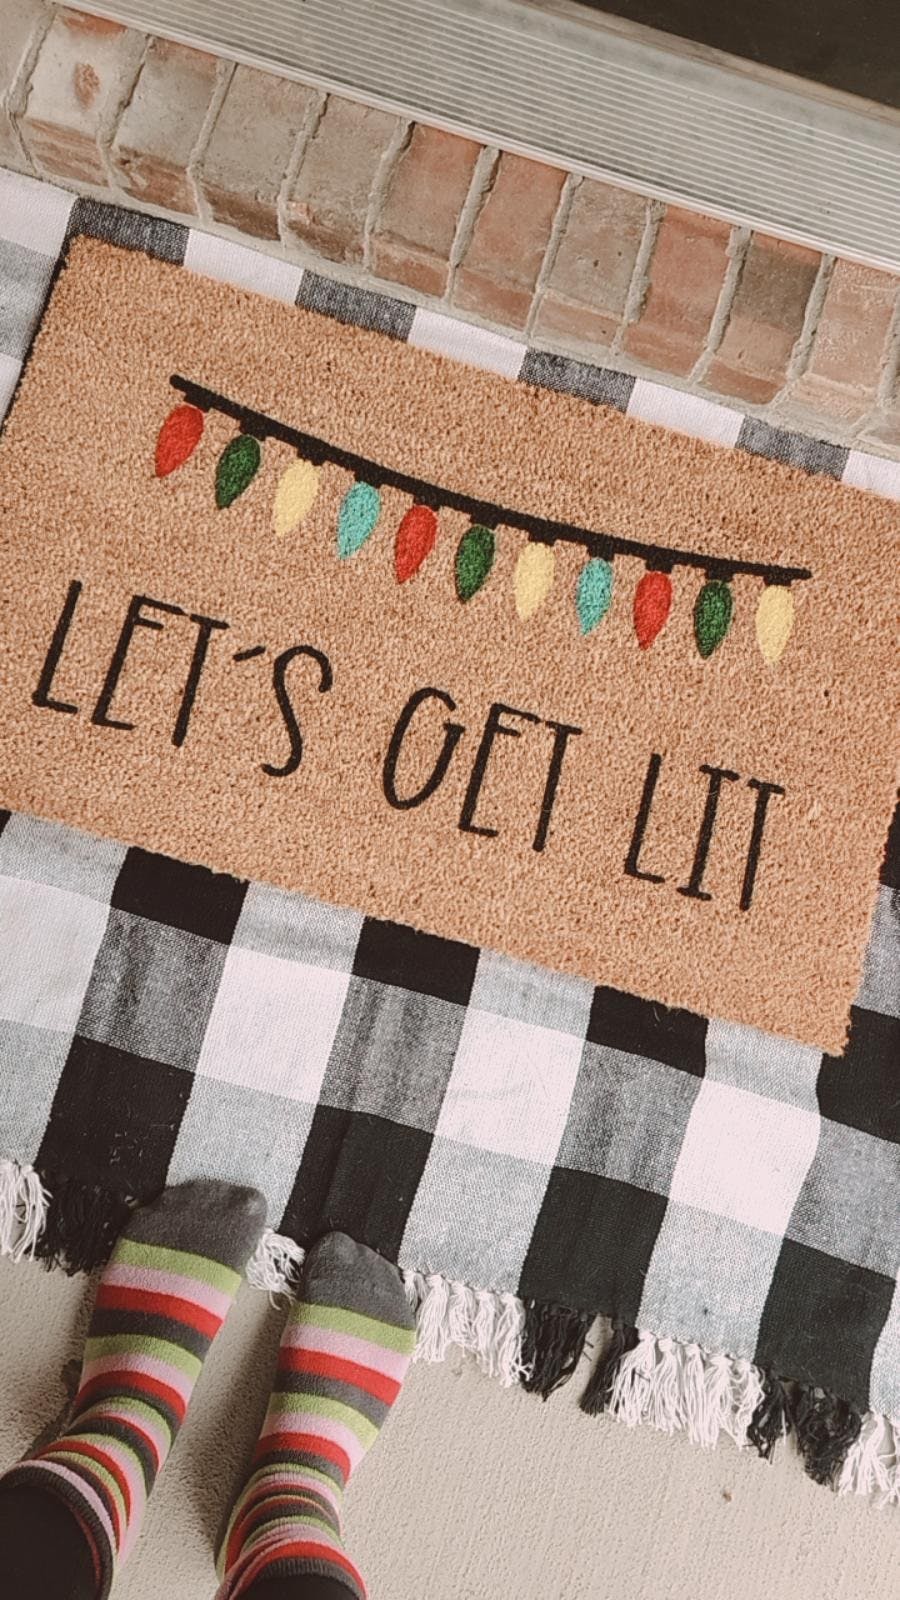 Let's Get Lit Doormat